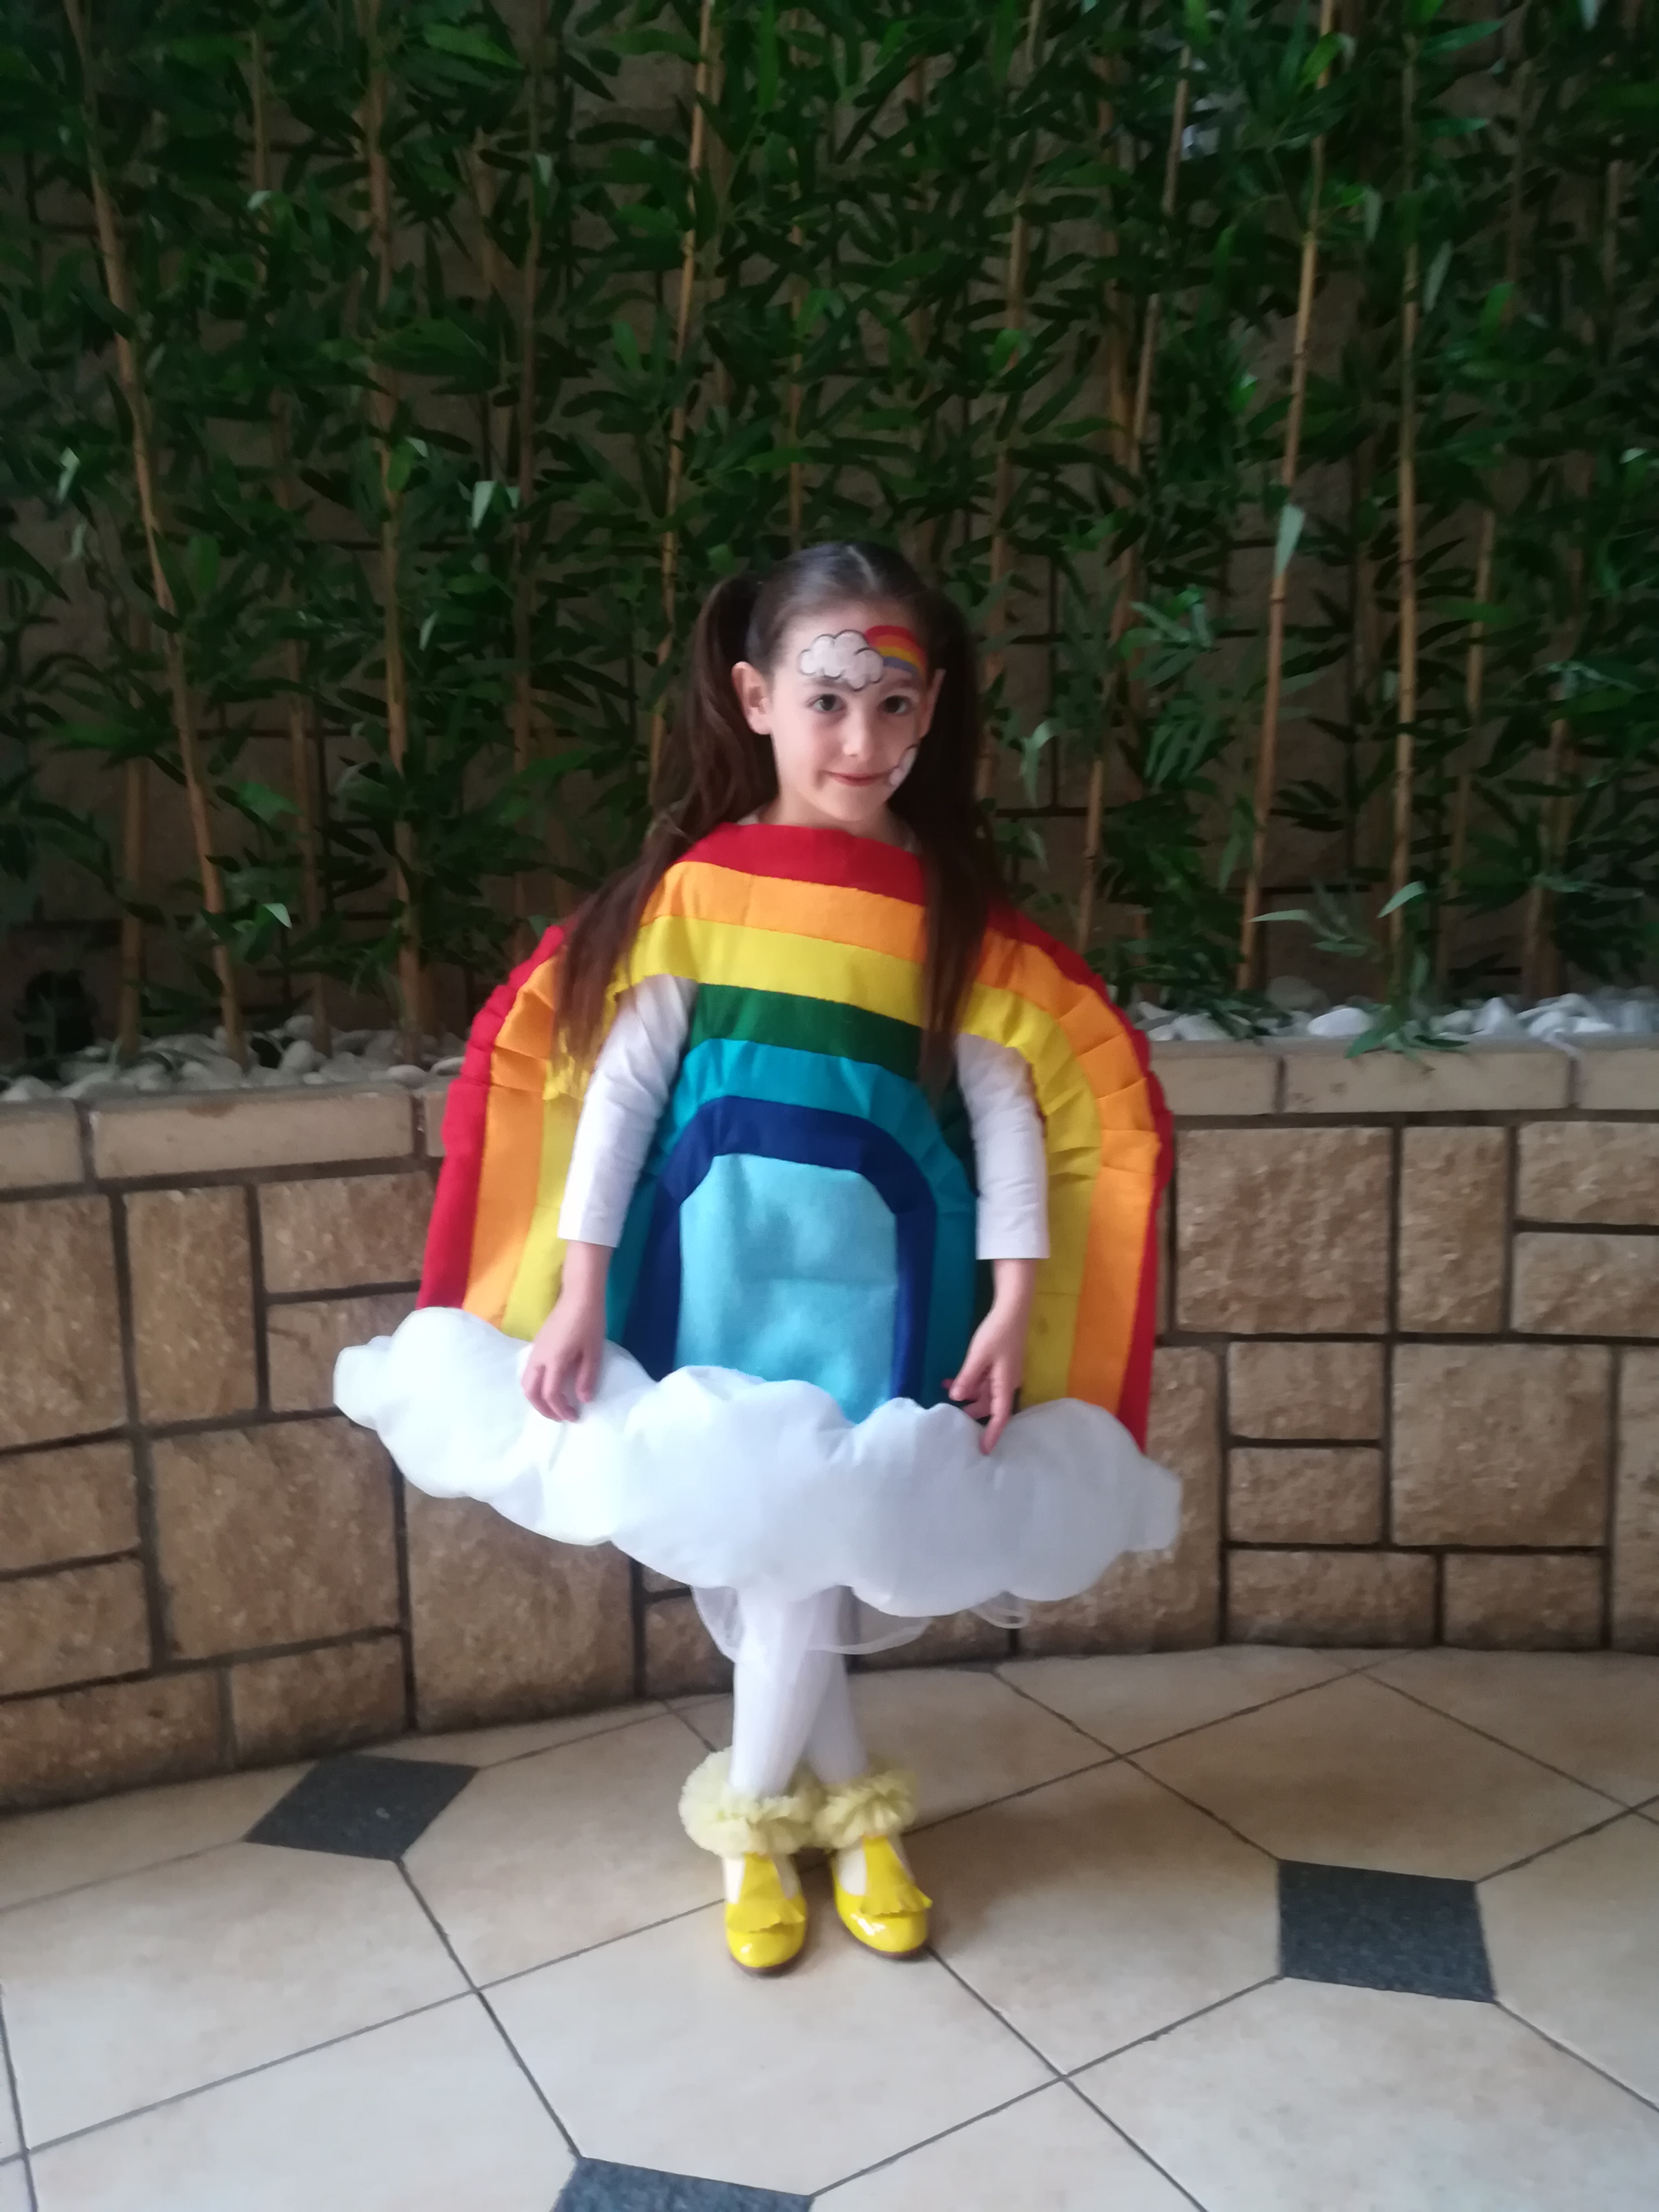 חגית פינטו מאור יהודה בת 7, התחפשה לקשת בענן